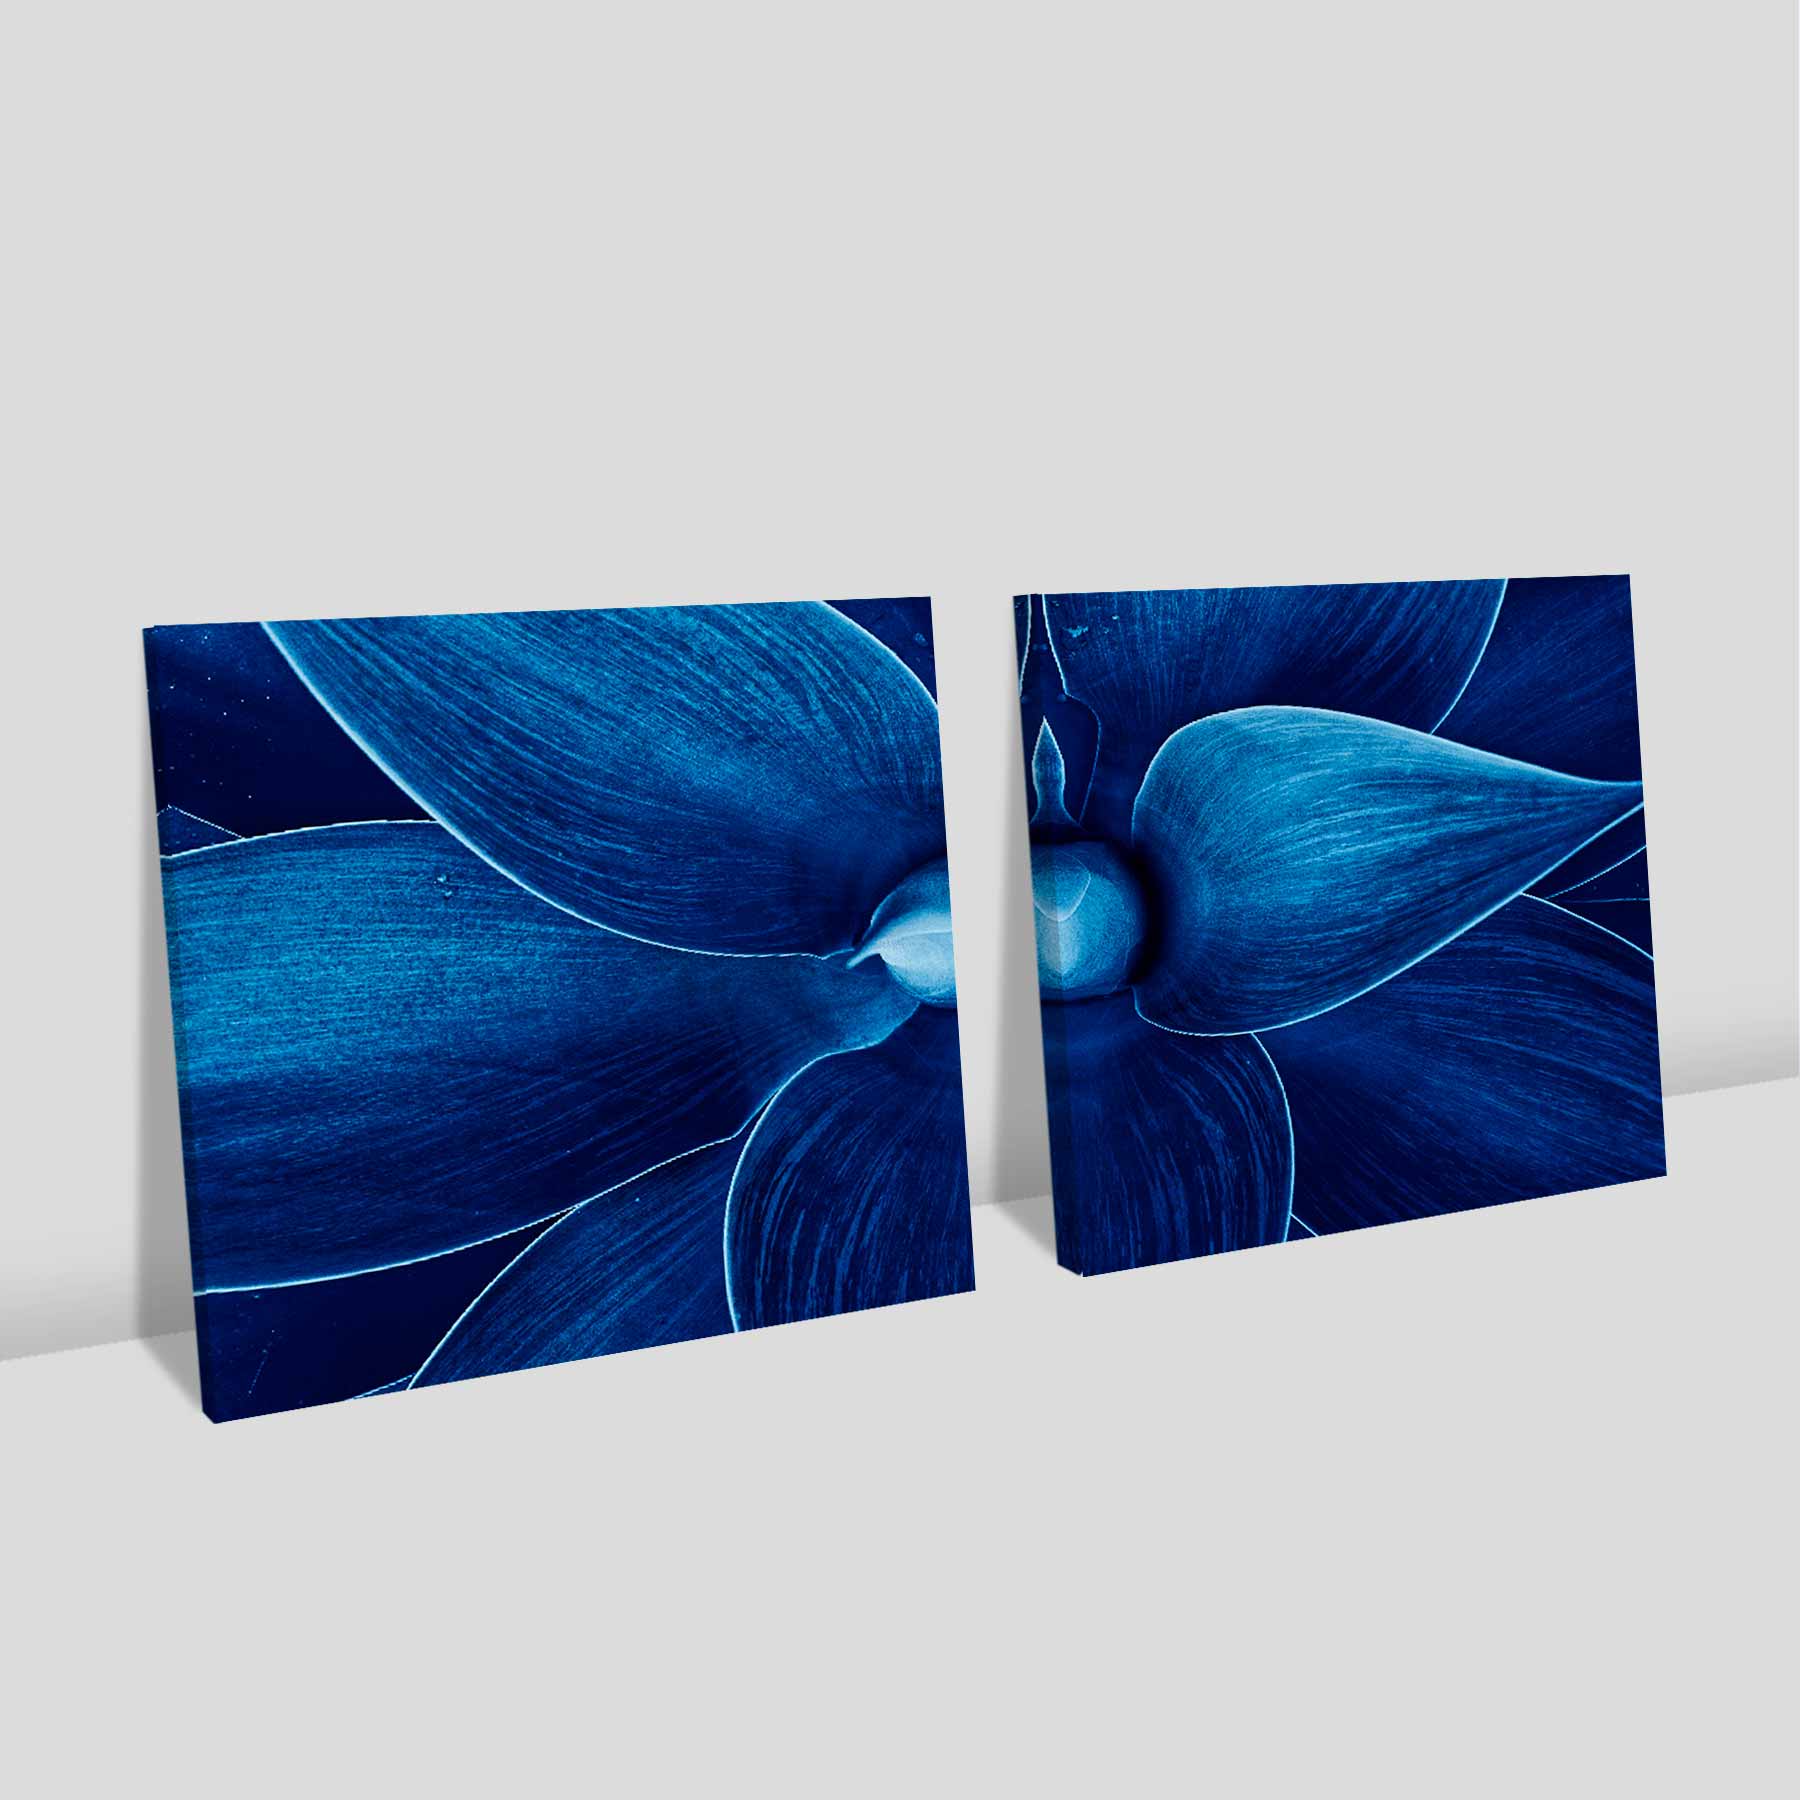 Kit 2 quadros quadrados - Detalhes da flor azul 